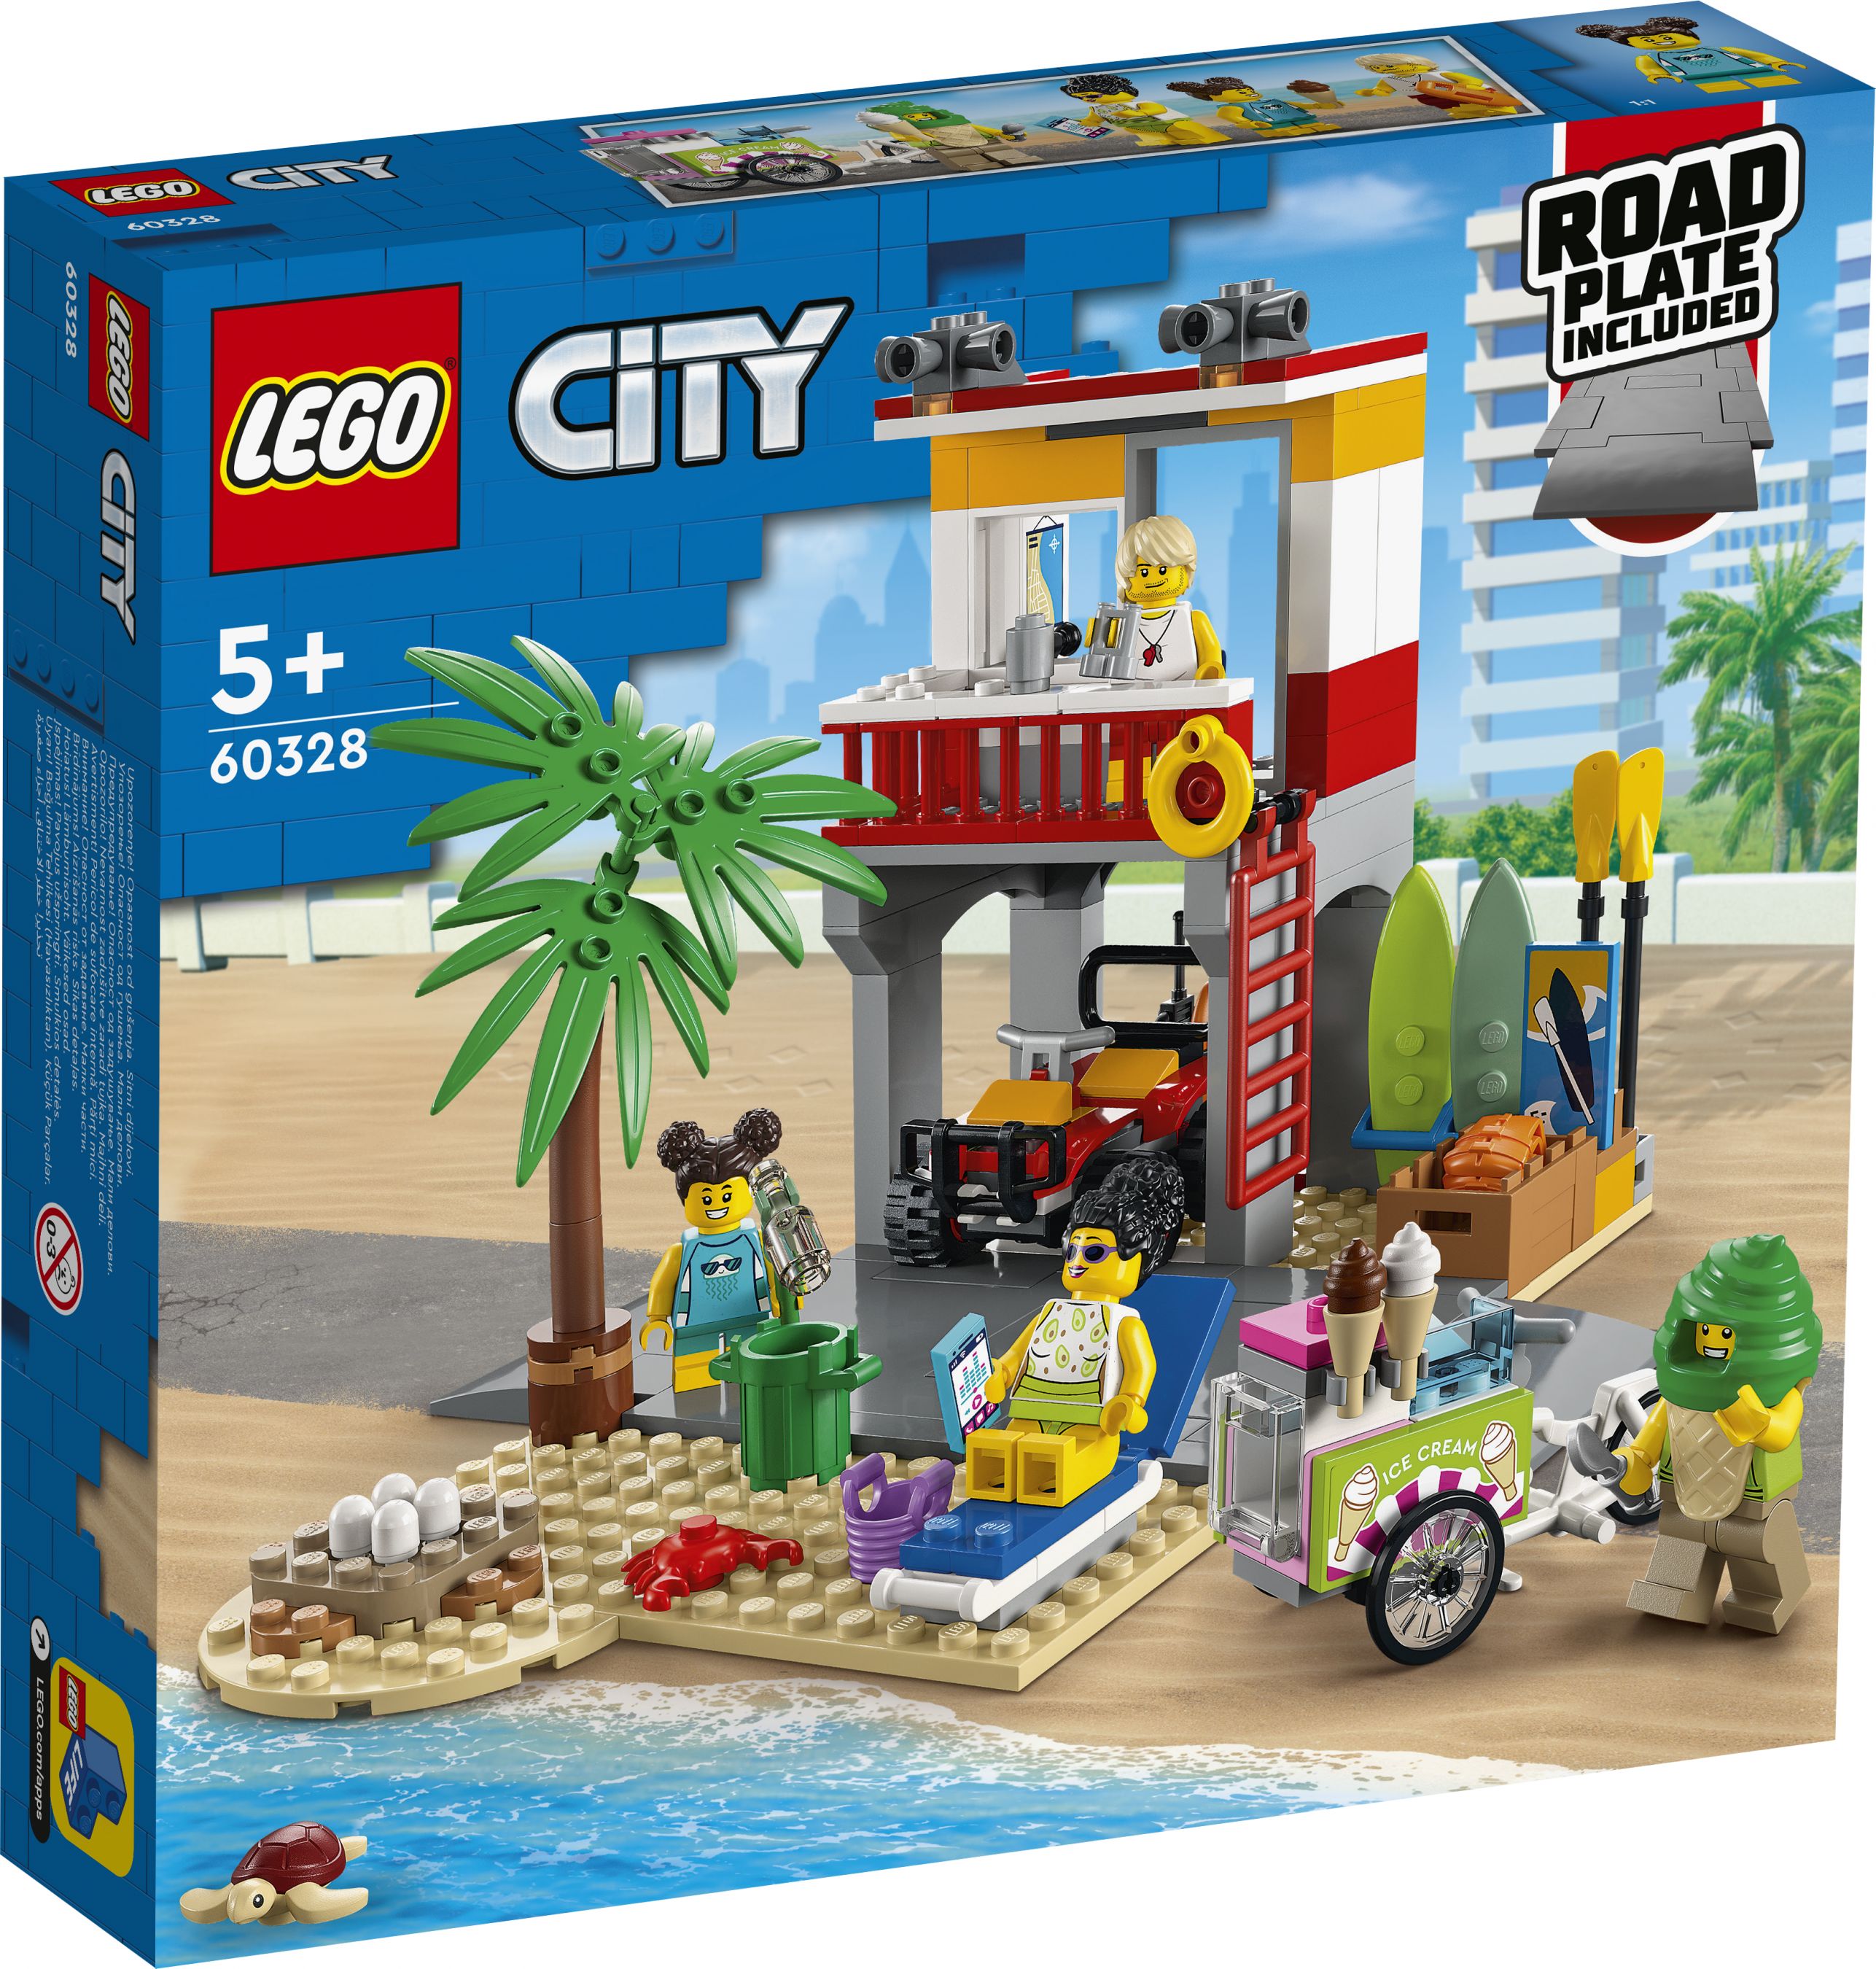 LEGO City 60328 Rettungsschwimmer-Station LEGO_60328_Box1_v29.jpg